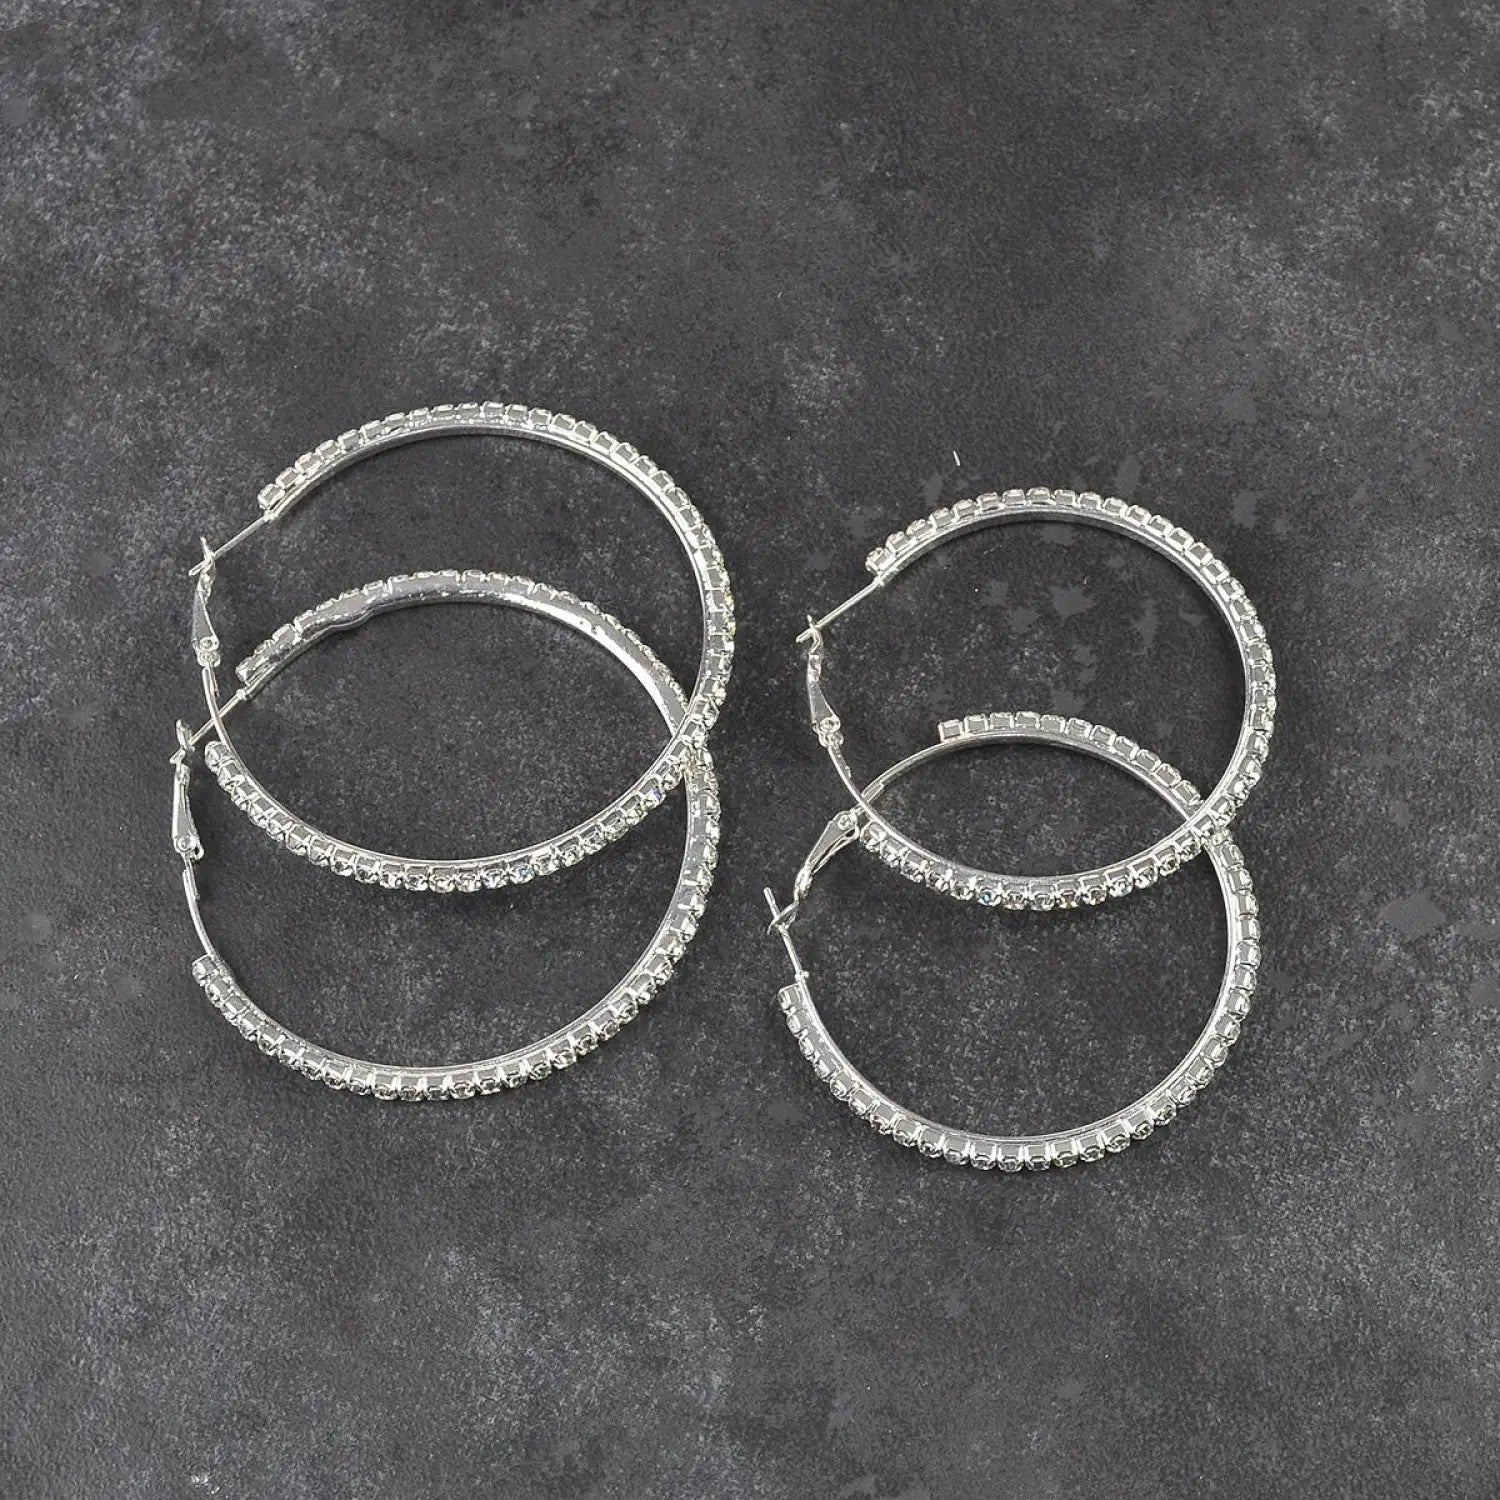 Silver hoop earrings with white crystals - Diamante Rhinestone Large Hoop Earrings